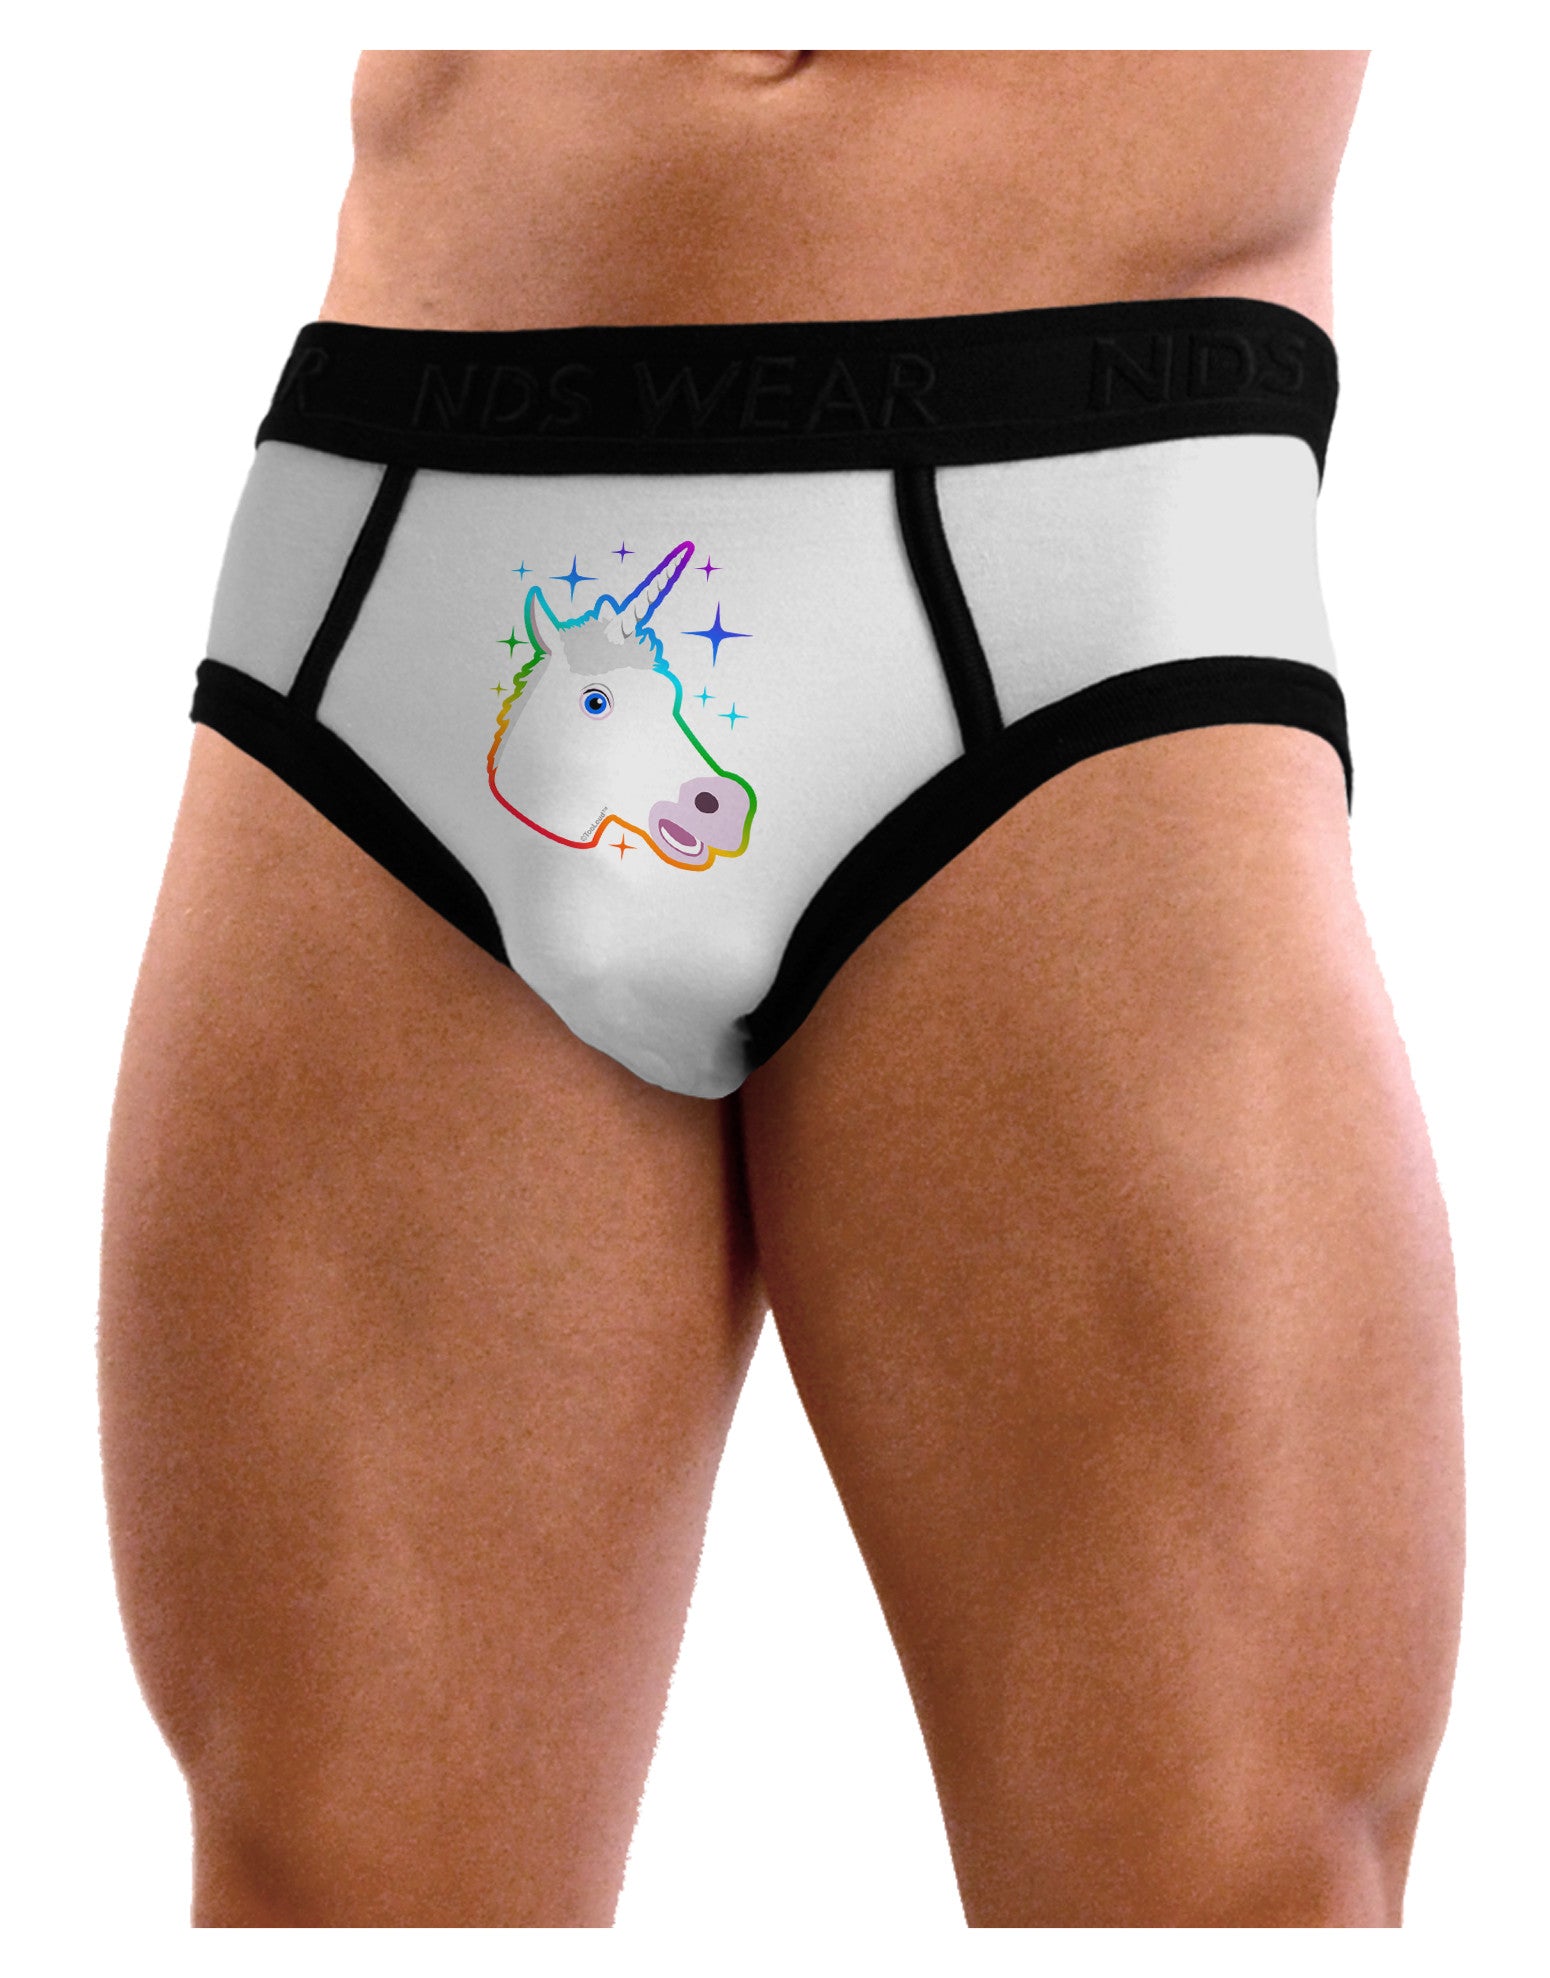 Magical Rainbow Sparkle Unicorn Mens NDS Wear Briefs Underwear - Davson  Sales